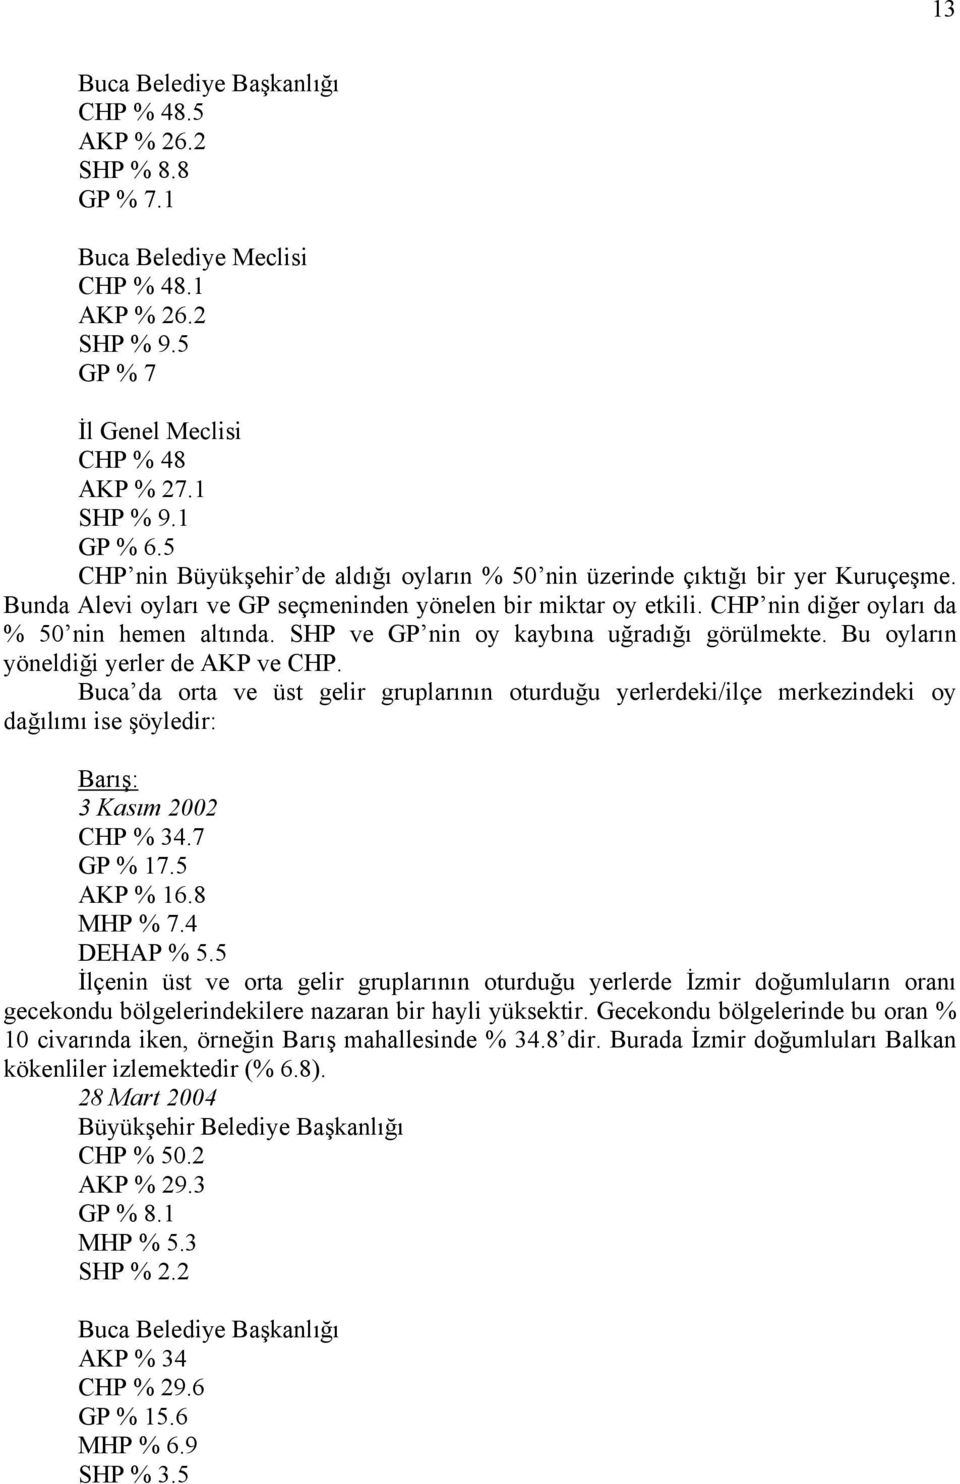 SHP ve GP nin oy kaybına uğradığı görülmekte. Bu oyların yöneldiği yerler de AKP ve CHP.